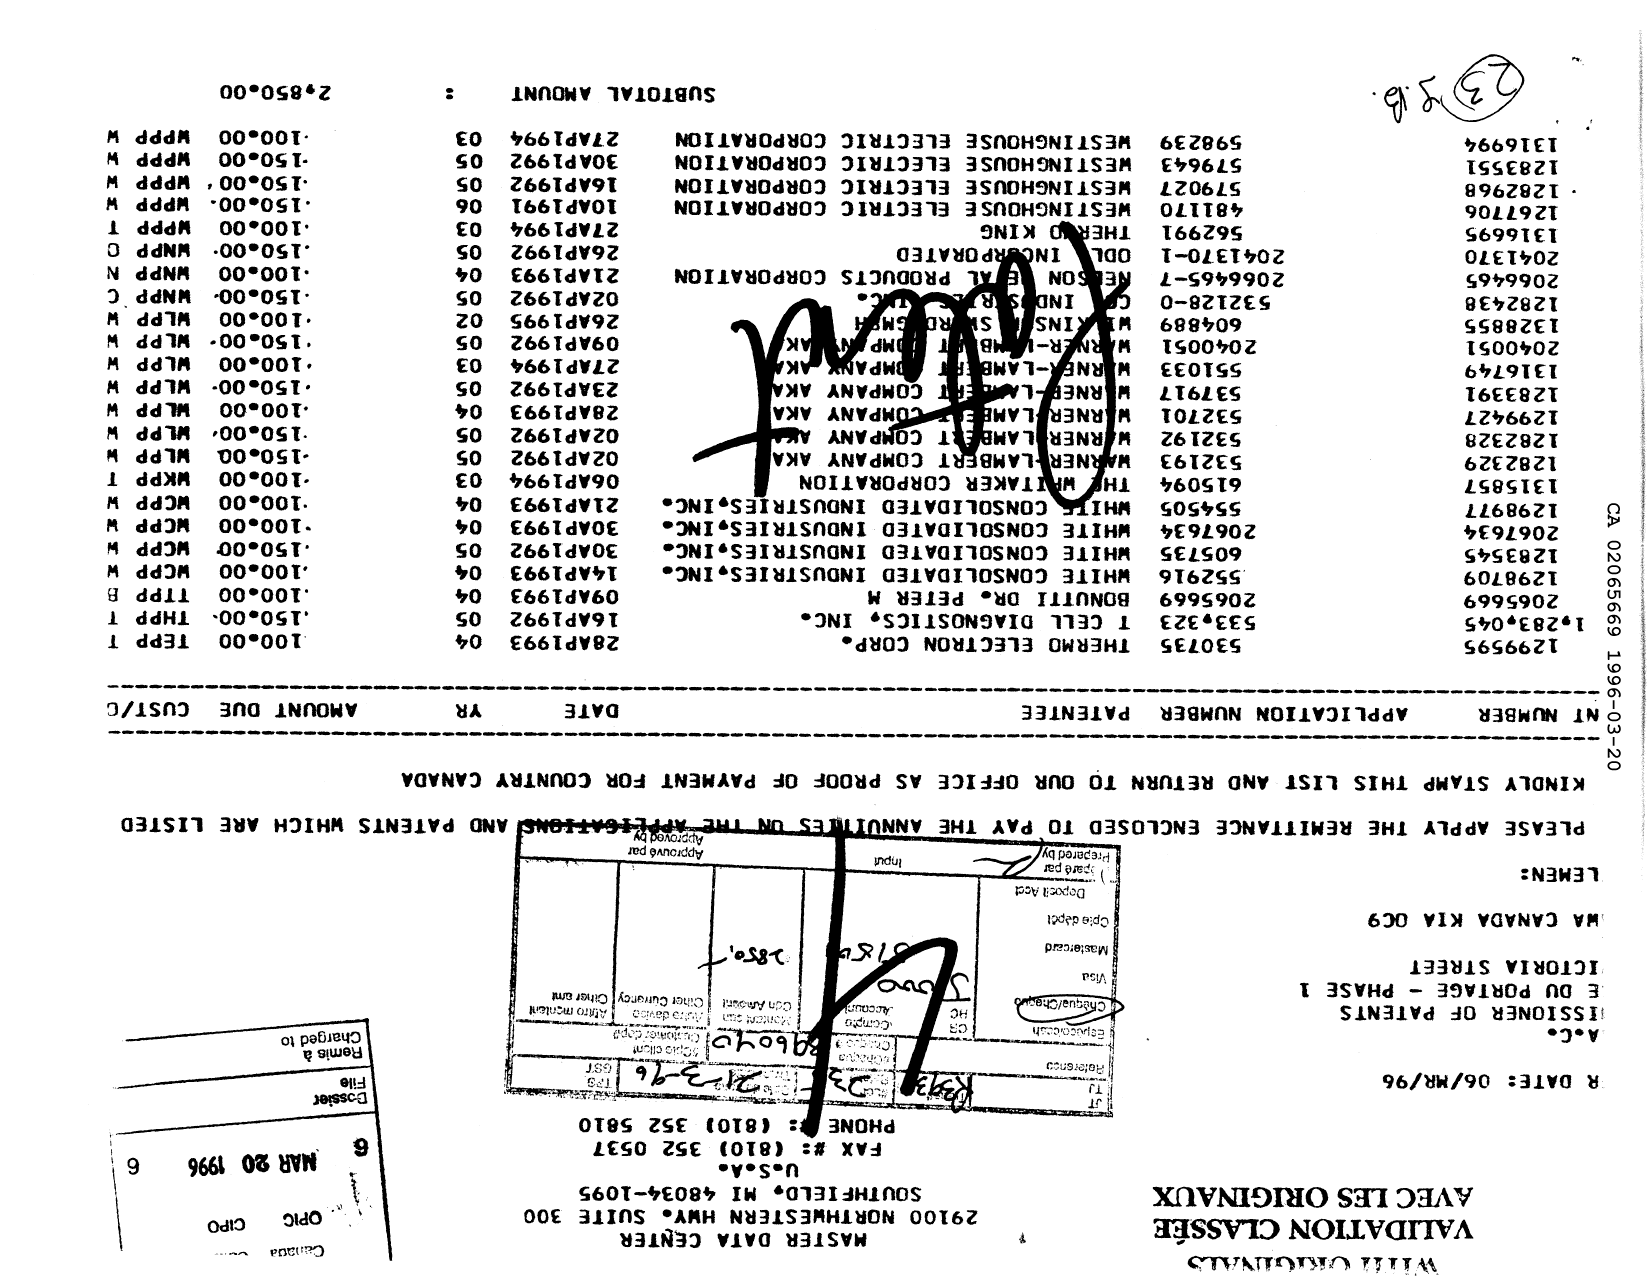 Document de brevet canadien 2065669. Taxes 19960320. Image 1 de 1